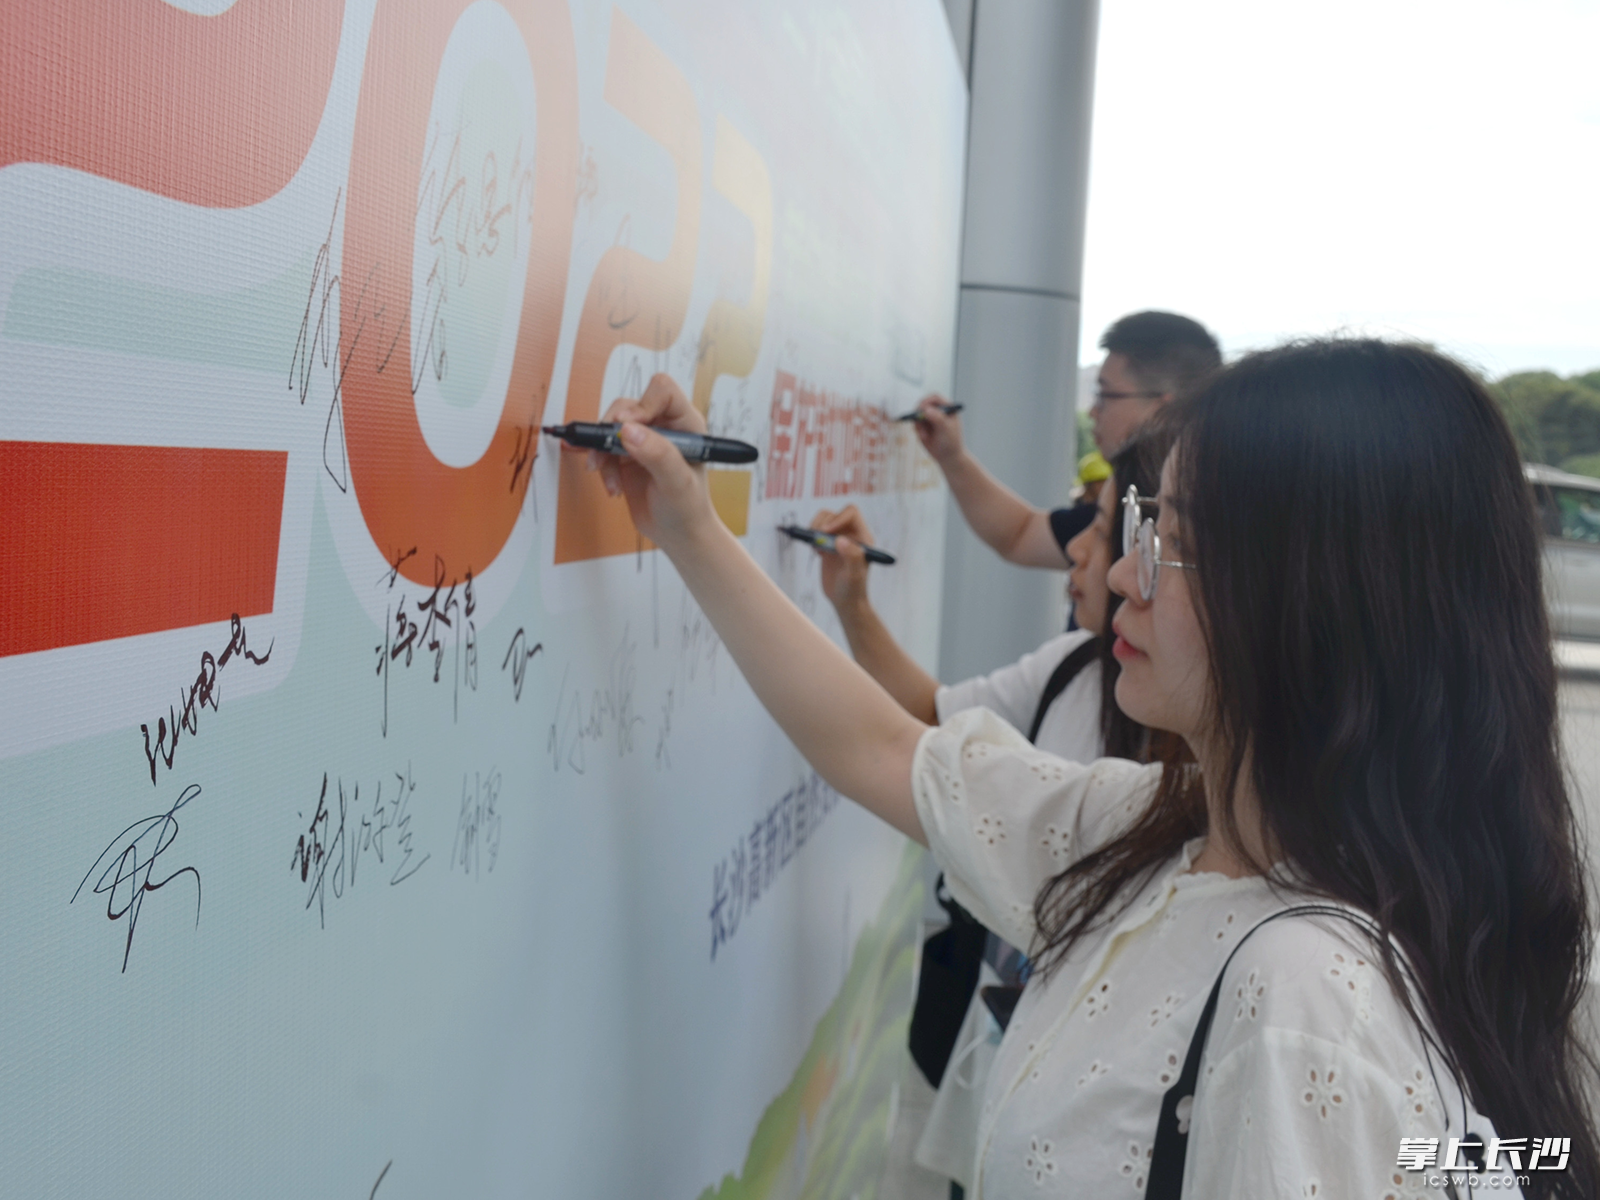 参与活动的群众纷纷在活动签名墙上写下自己的名字。